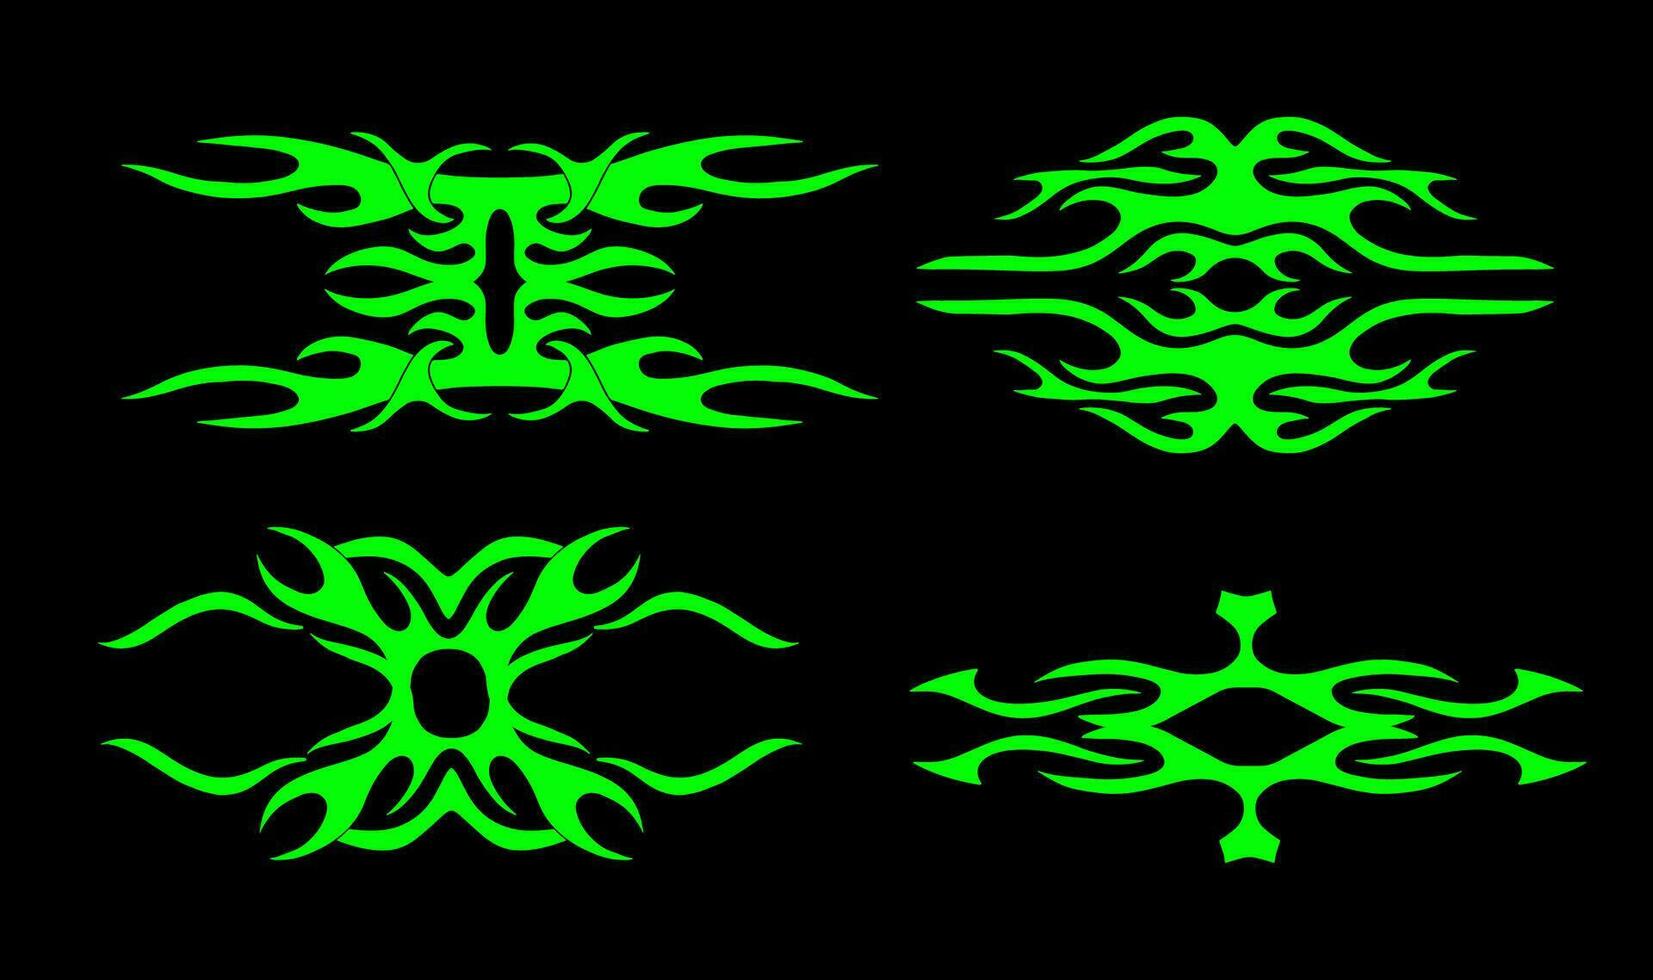 neo tribal o ciber sigilismo forma conjunto para tatuaje, ropa de calle etc mano dibujado simétrico vector ilustración.